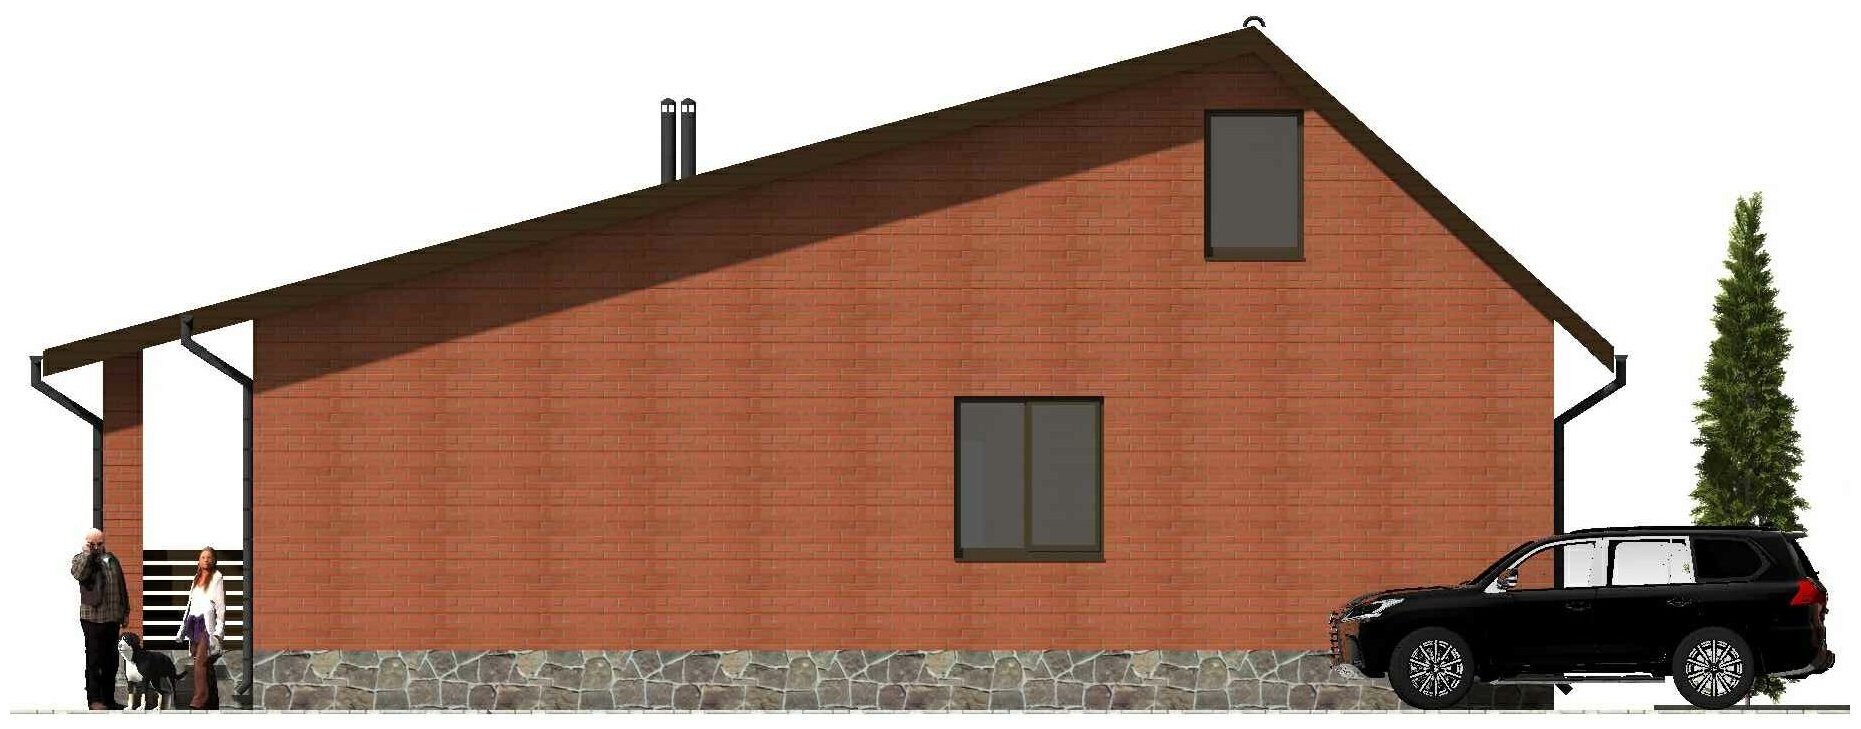 Готовый проект одноэтажного дома без гаража из газобетонного блока с облицовкой из керамического облицовочного кирпича площадью 55,9 кв.м - фотография № 8